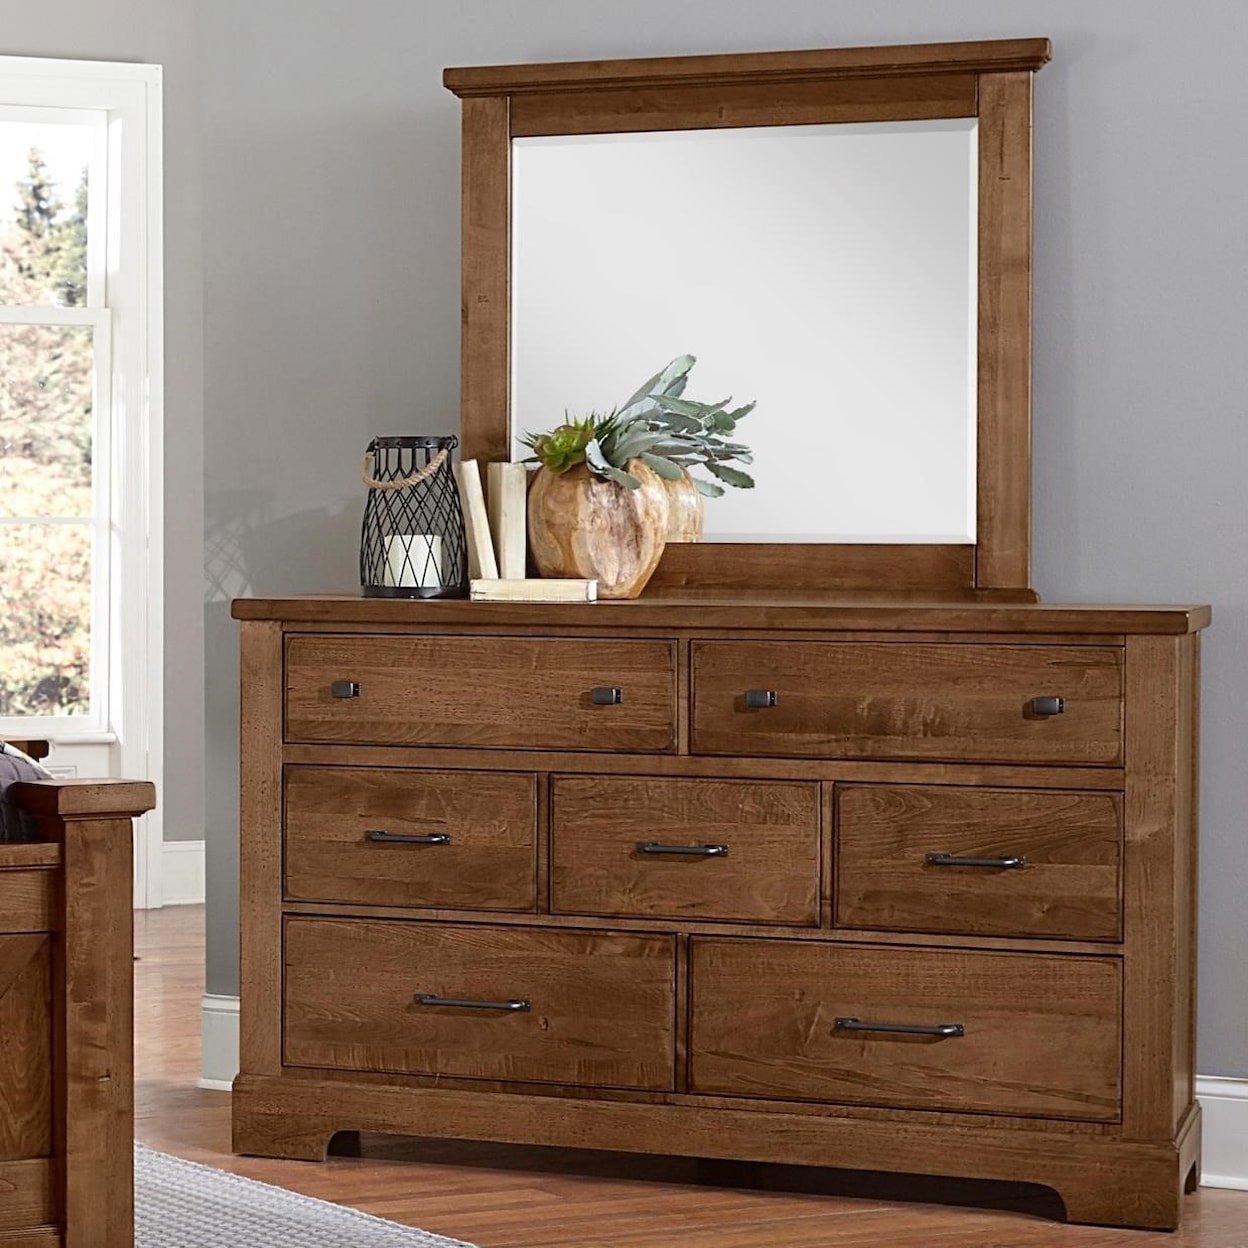 Artisan & Post Cool Rustic 7-Drawer Dresser & Mirror Set